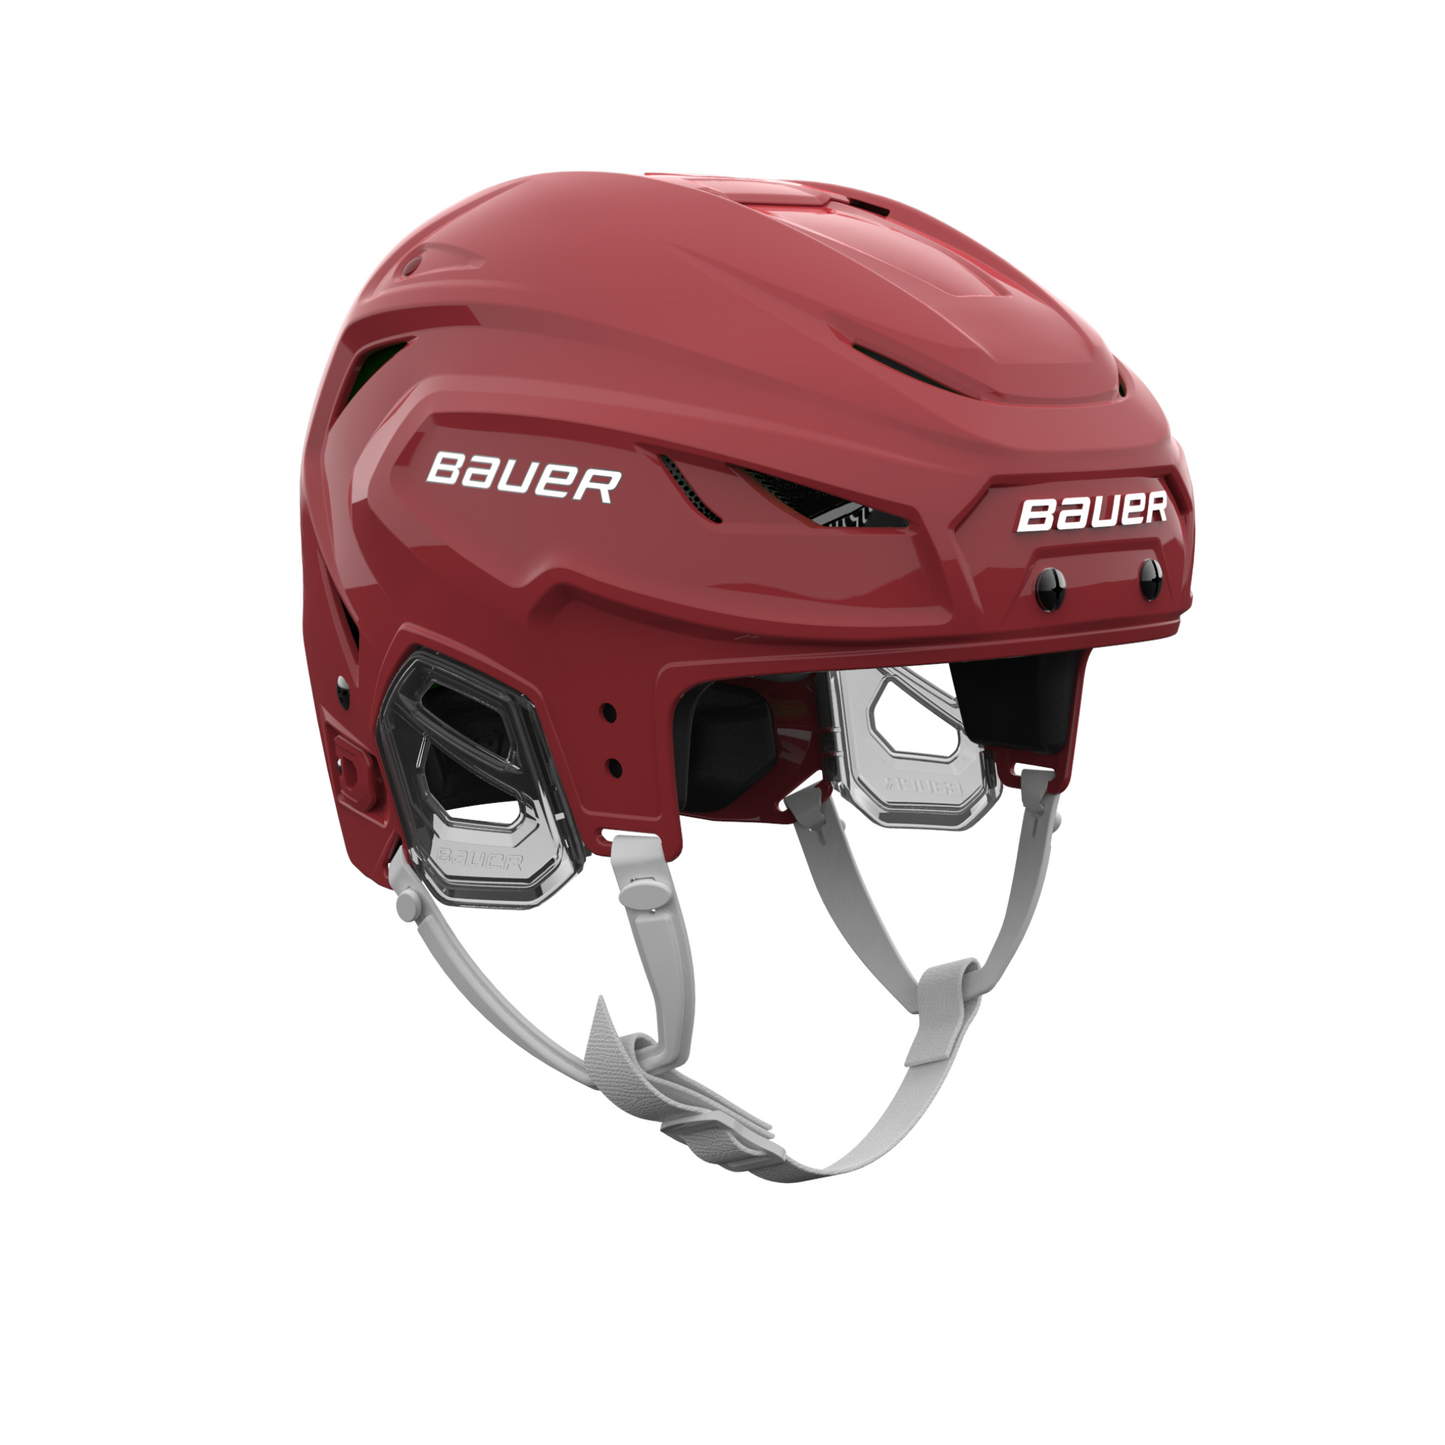 Bauer Vapor Hyperlite 2 Senior Hockey Helmet